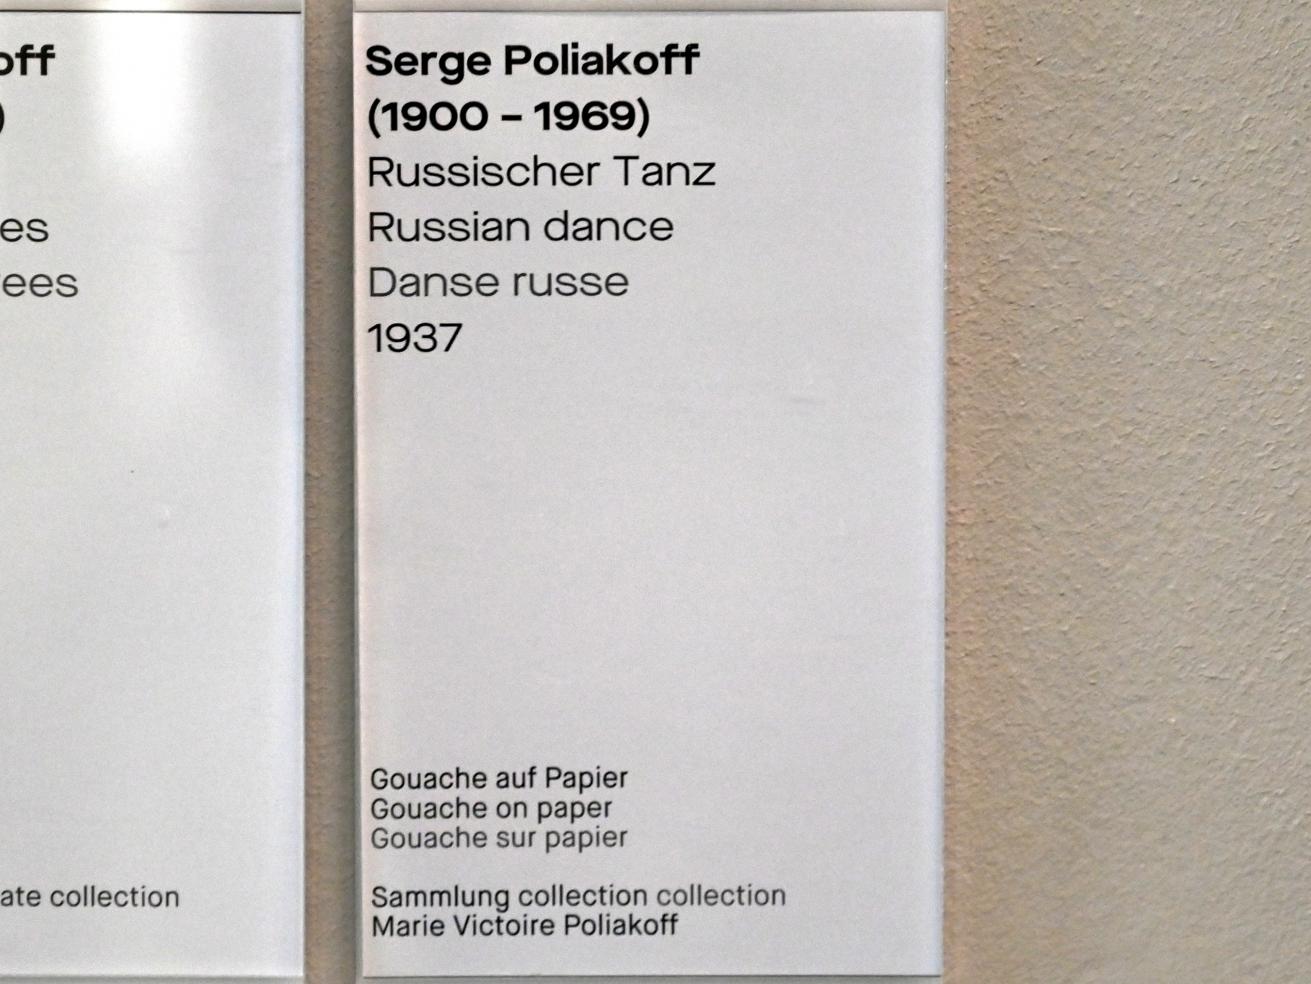 Serge Poliakoff (1936–1968), Russischer Tanz, Chemnitz, Museum Gunzenhauser, Saal 2.2 - Serge Poliakoff, 1937, Bild 2/2